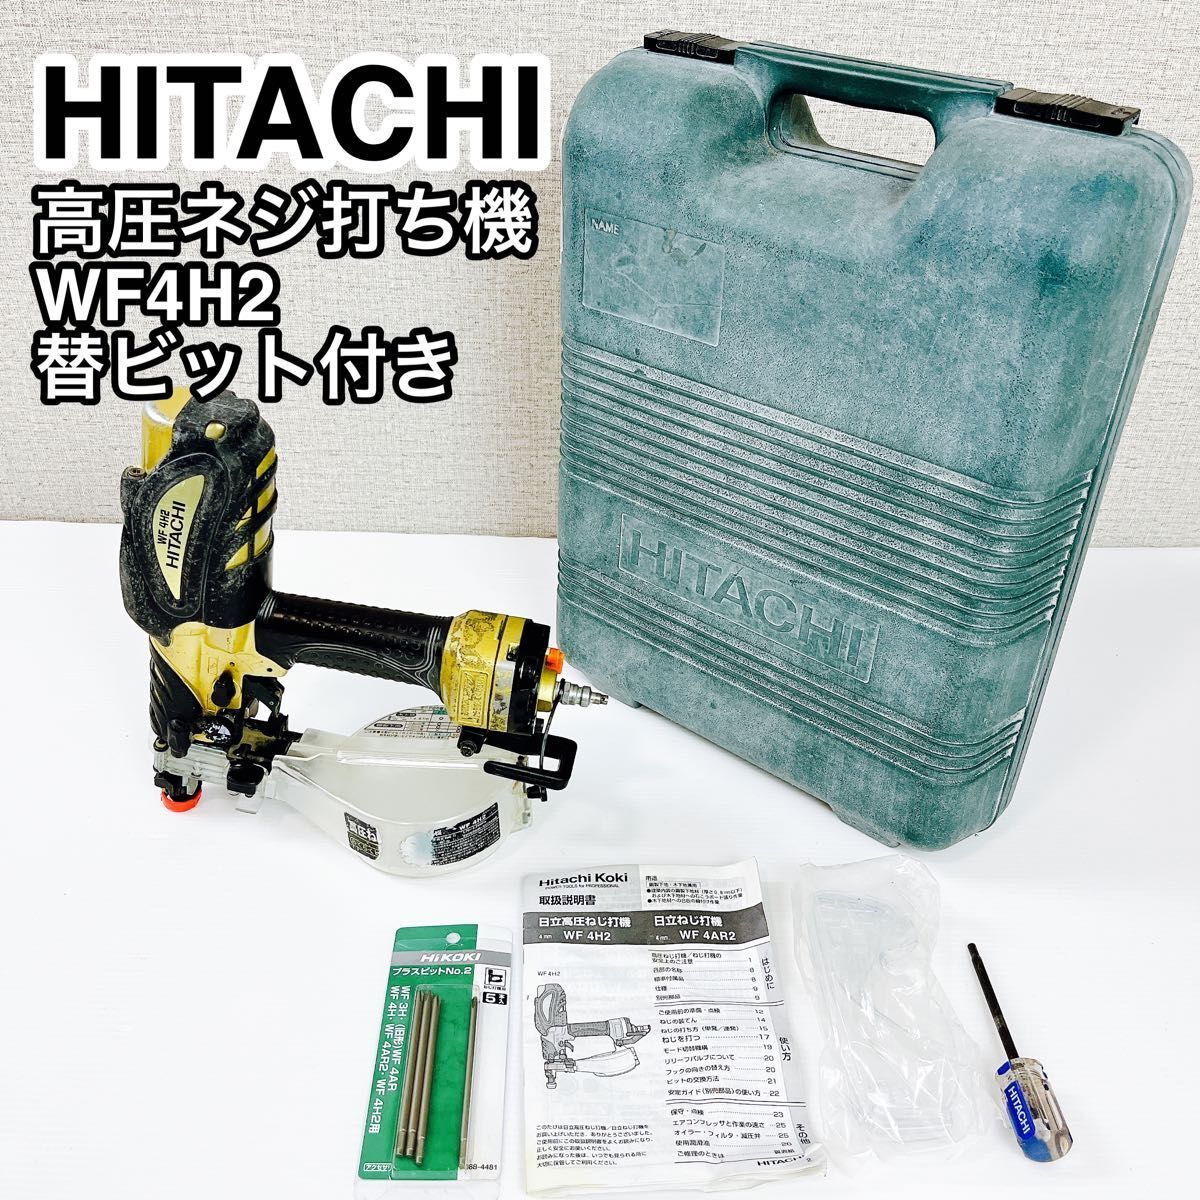 日立工機 HITACHI 高圧ネジ打ち機 WF4H2 替ビット付き【7日間返金保証】